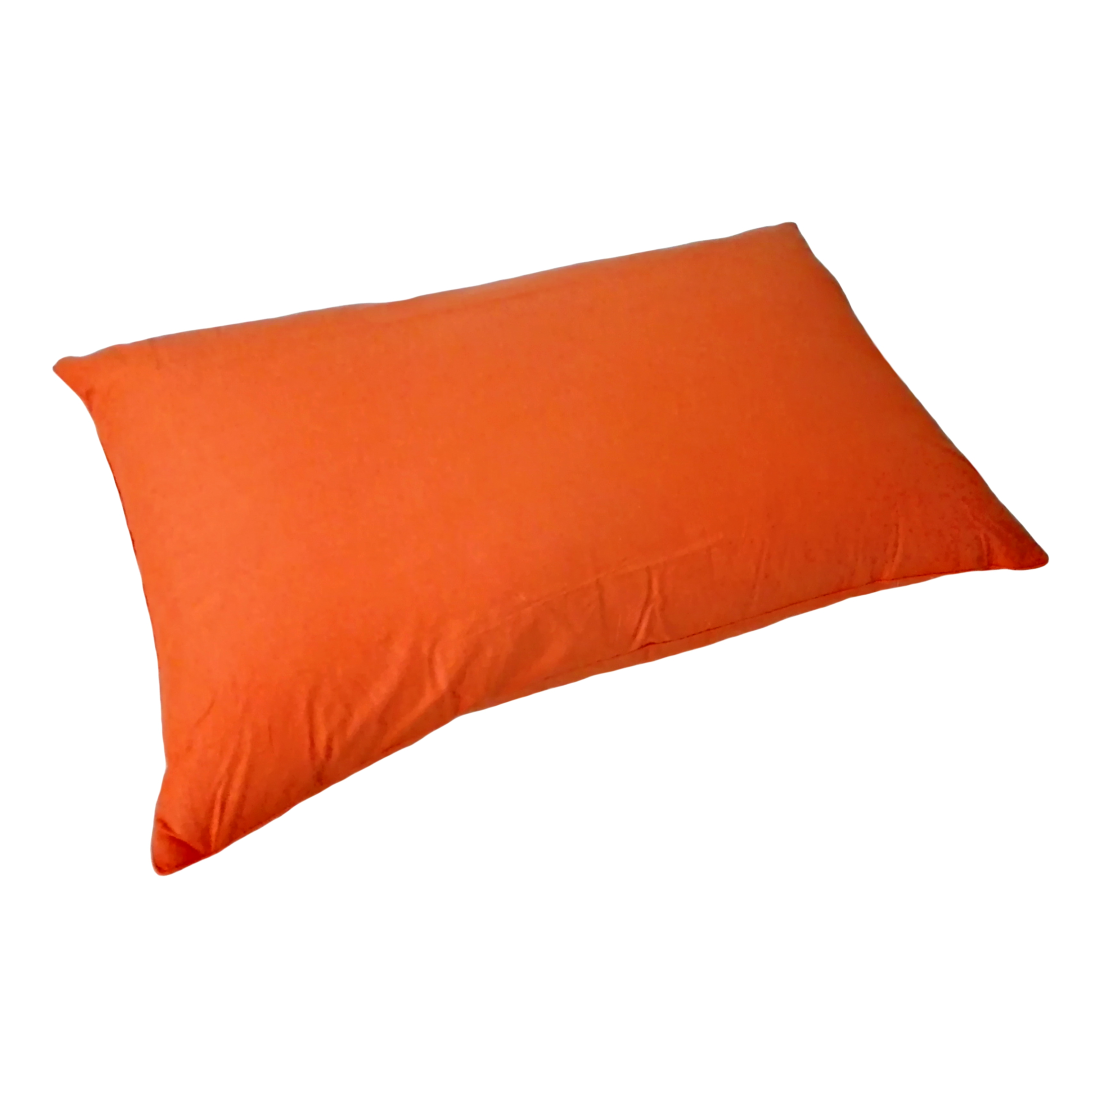 Perna pana gasca, 50x70 cm, orange, HomeStill